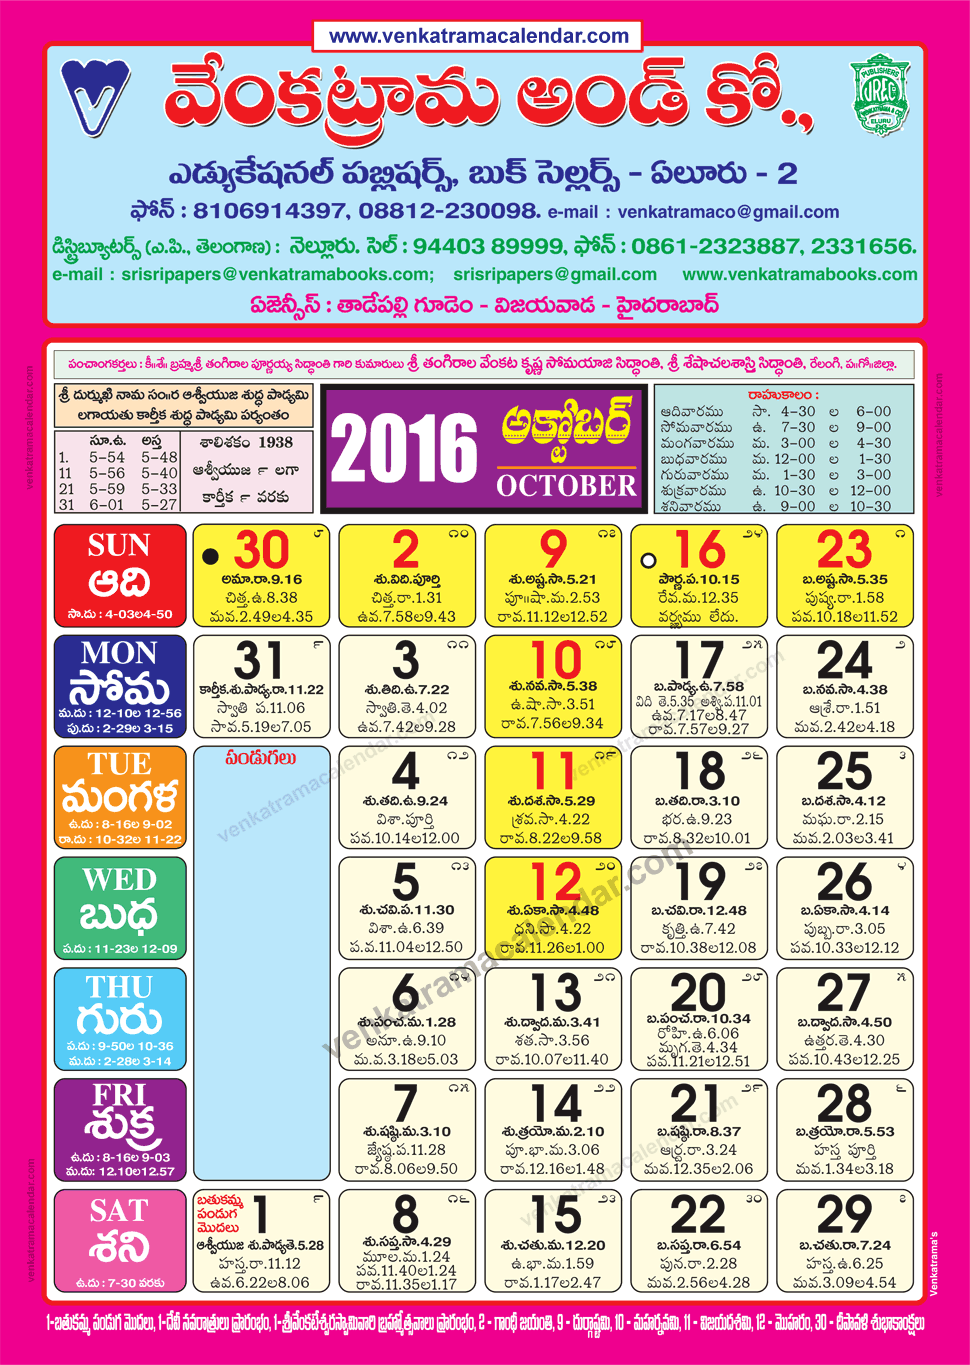 october-2016-venkatrama-co-multi-colour-telugu-calendar-2016